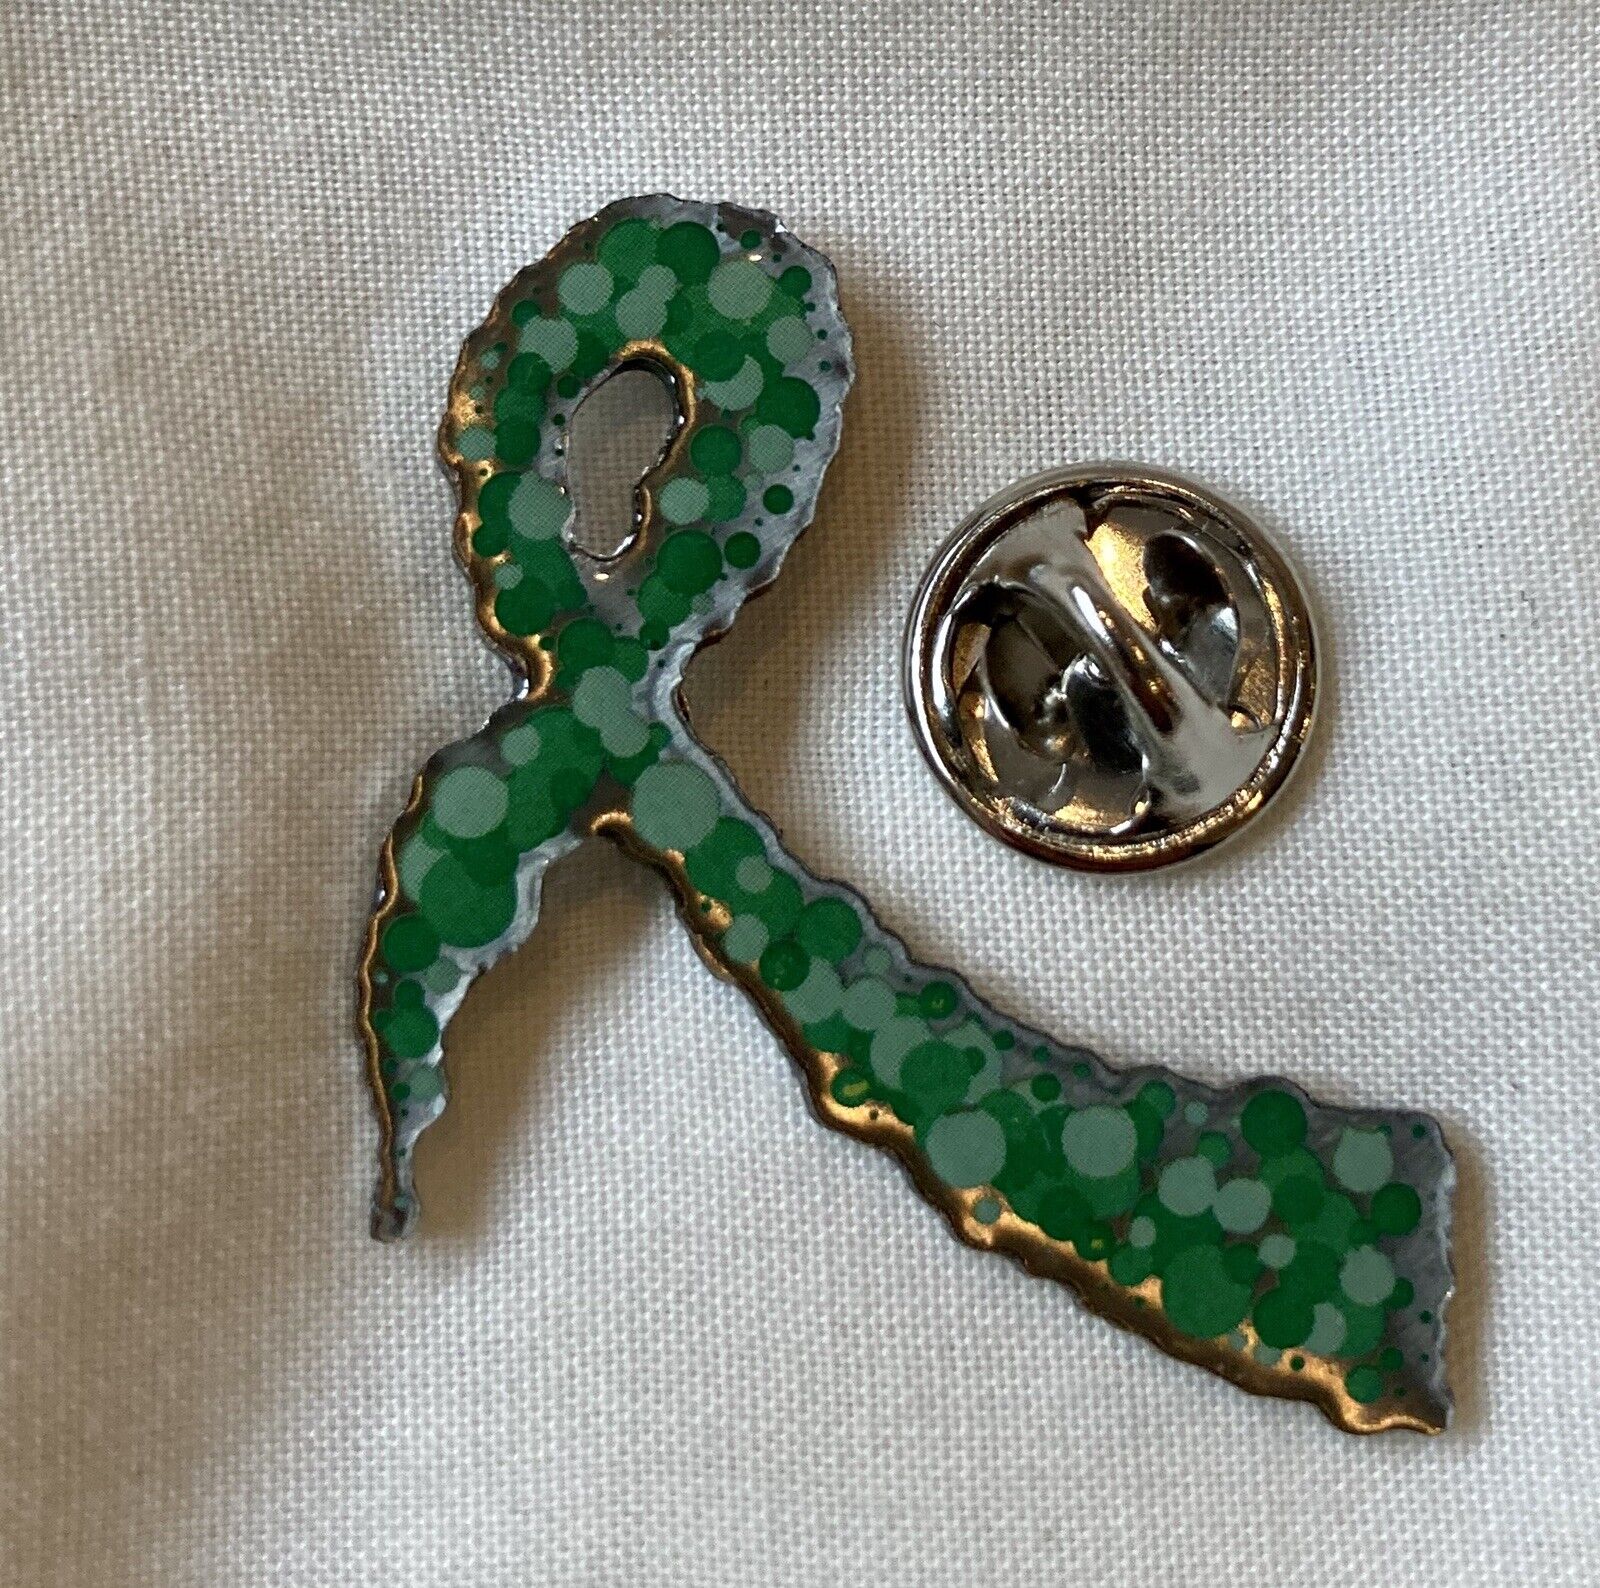 ***NEW*** Glaucoma awareness ribbon green pin badge / brooch. Charity